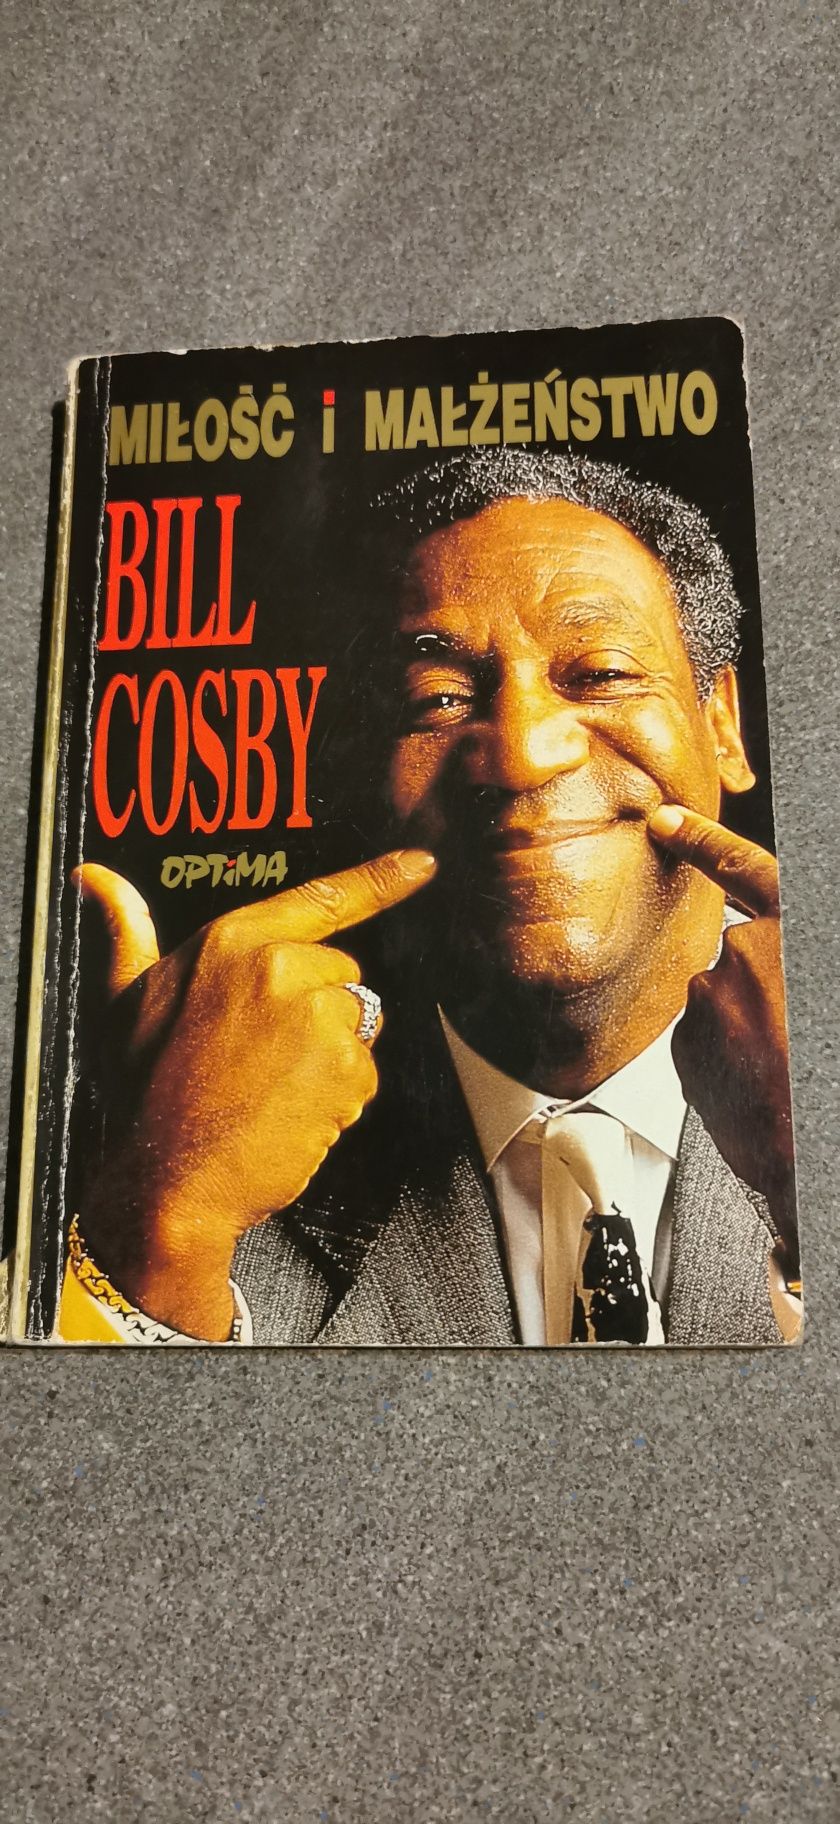 Biografia Bill Cosby
Miłość i małżeństwo